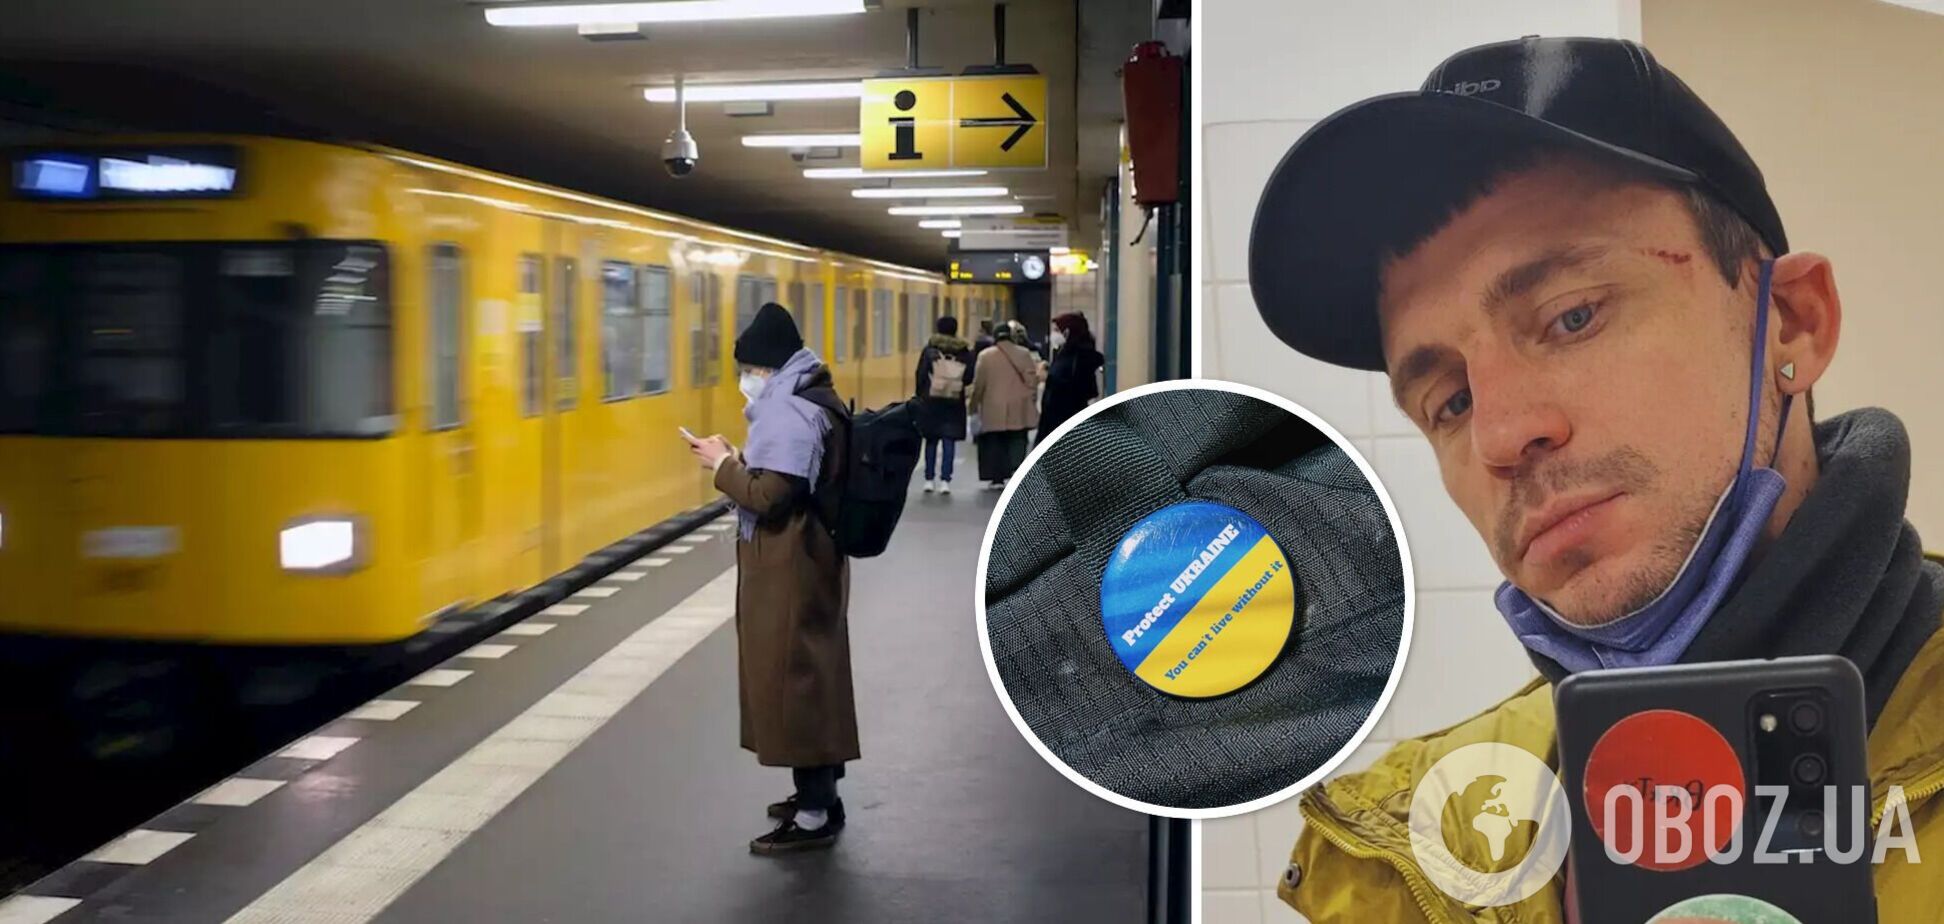 У метро Берліна побили українця через значок із національним прапором: подробиці інциденту